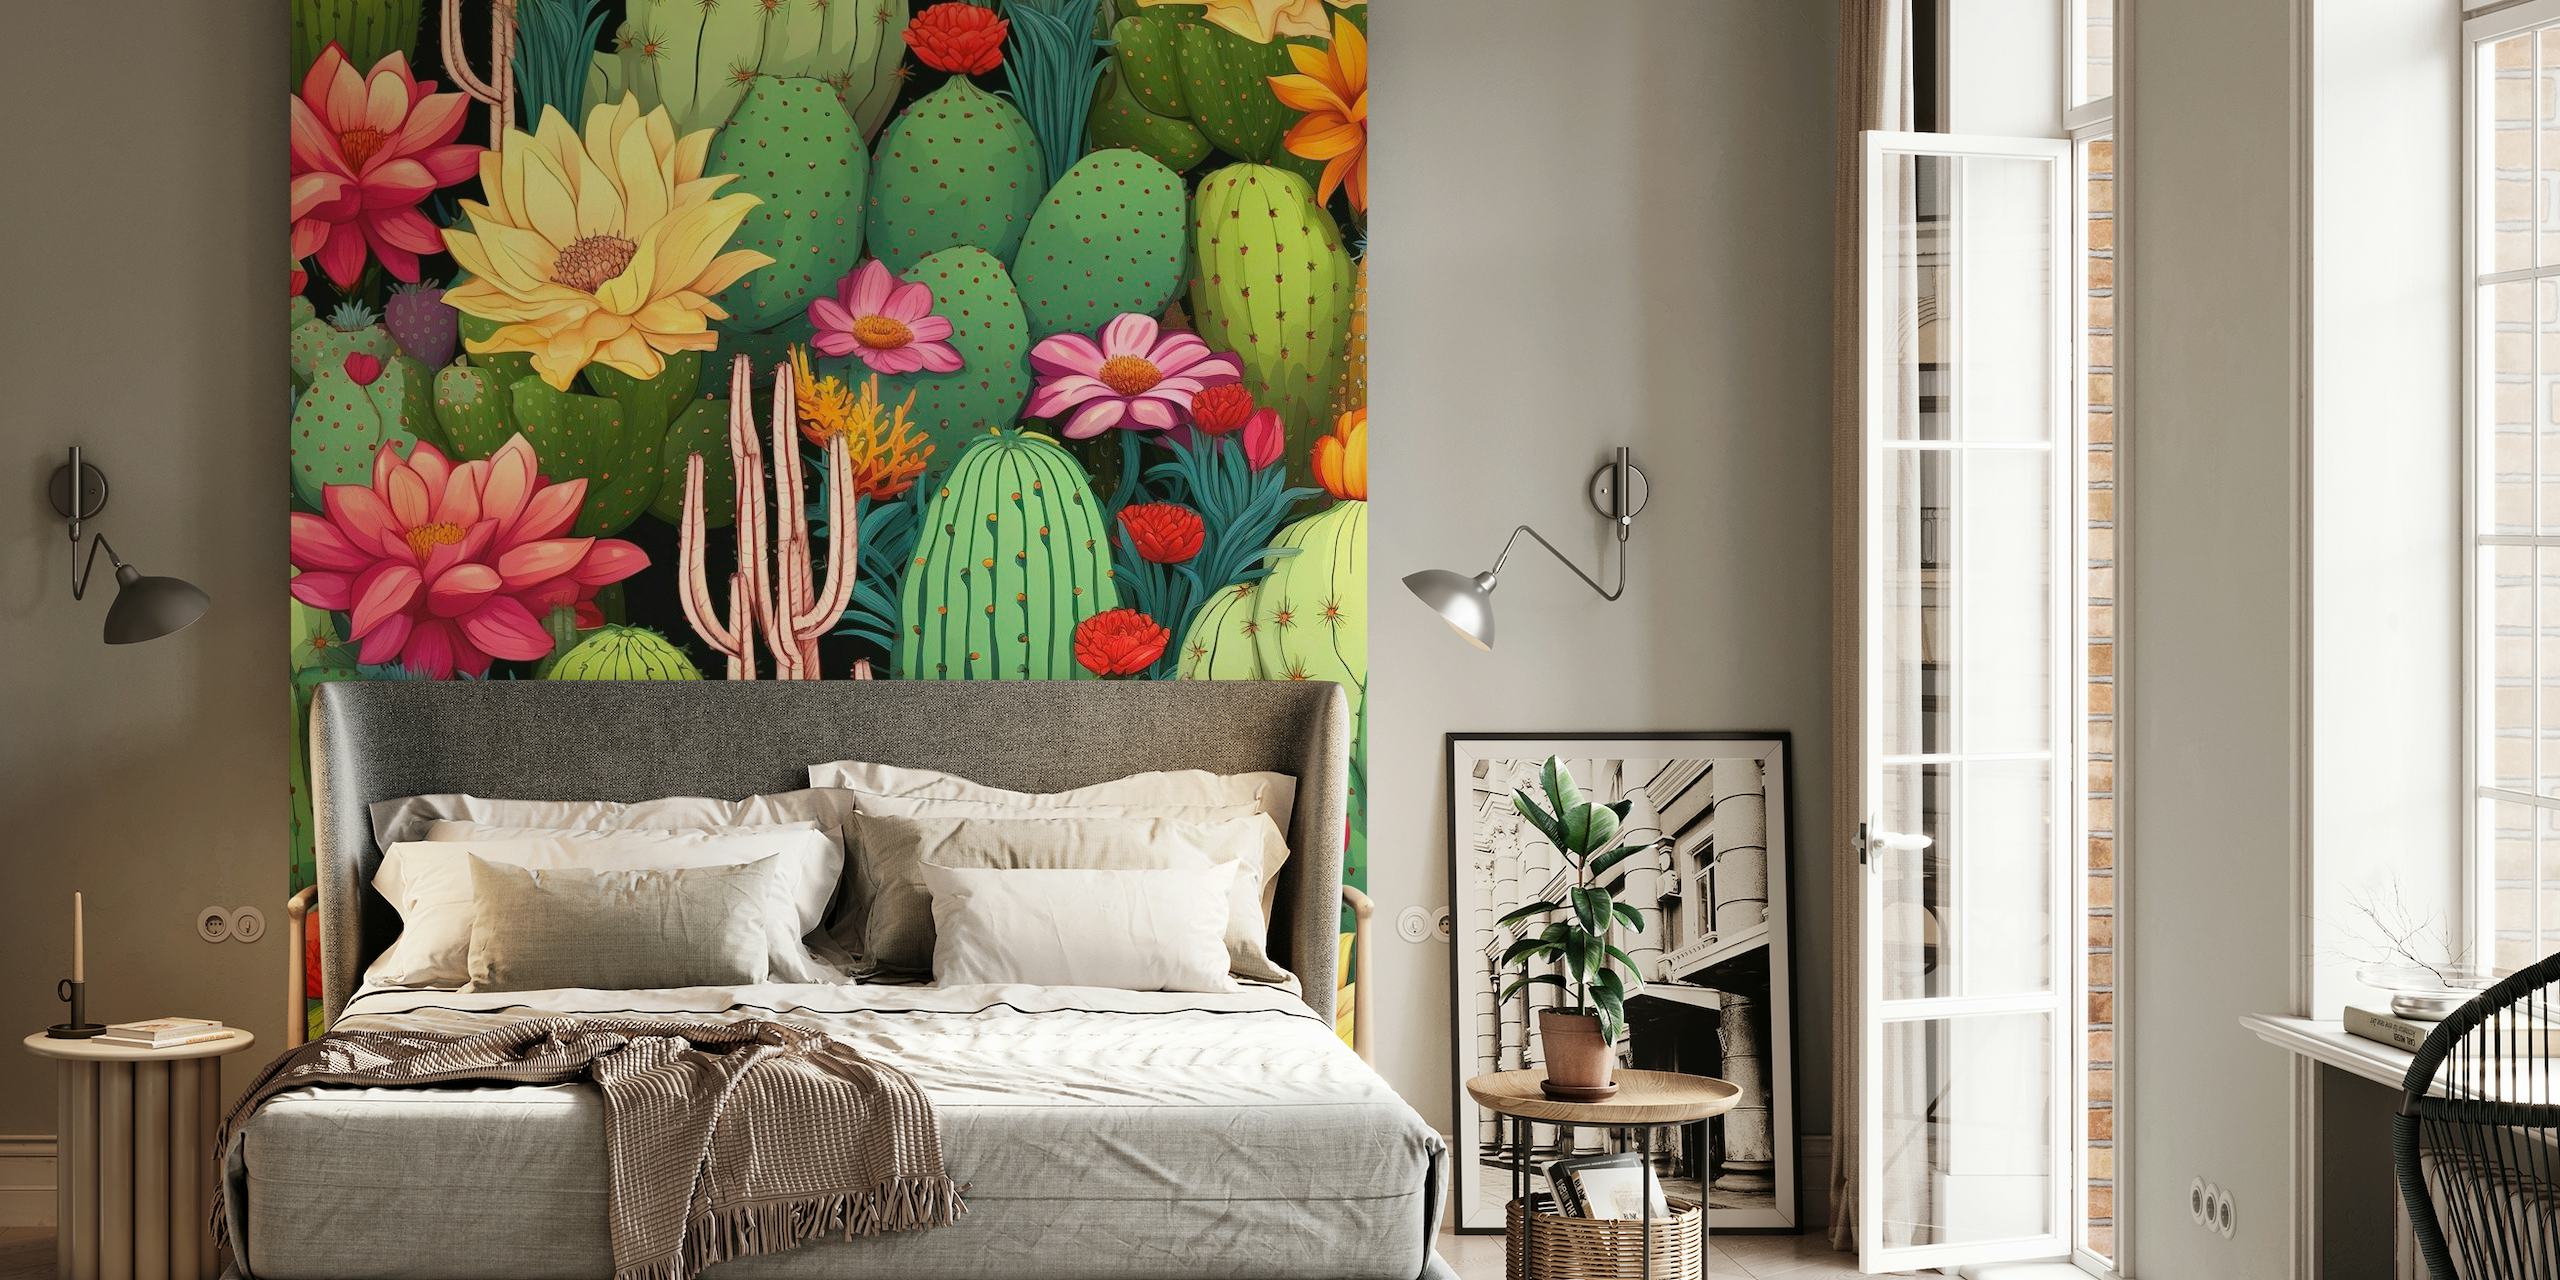 Elävä kaktusten ja kukkien seinämaalaus, jossa on erilaisia mehikasveja elävässä koostumuksessa